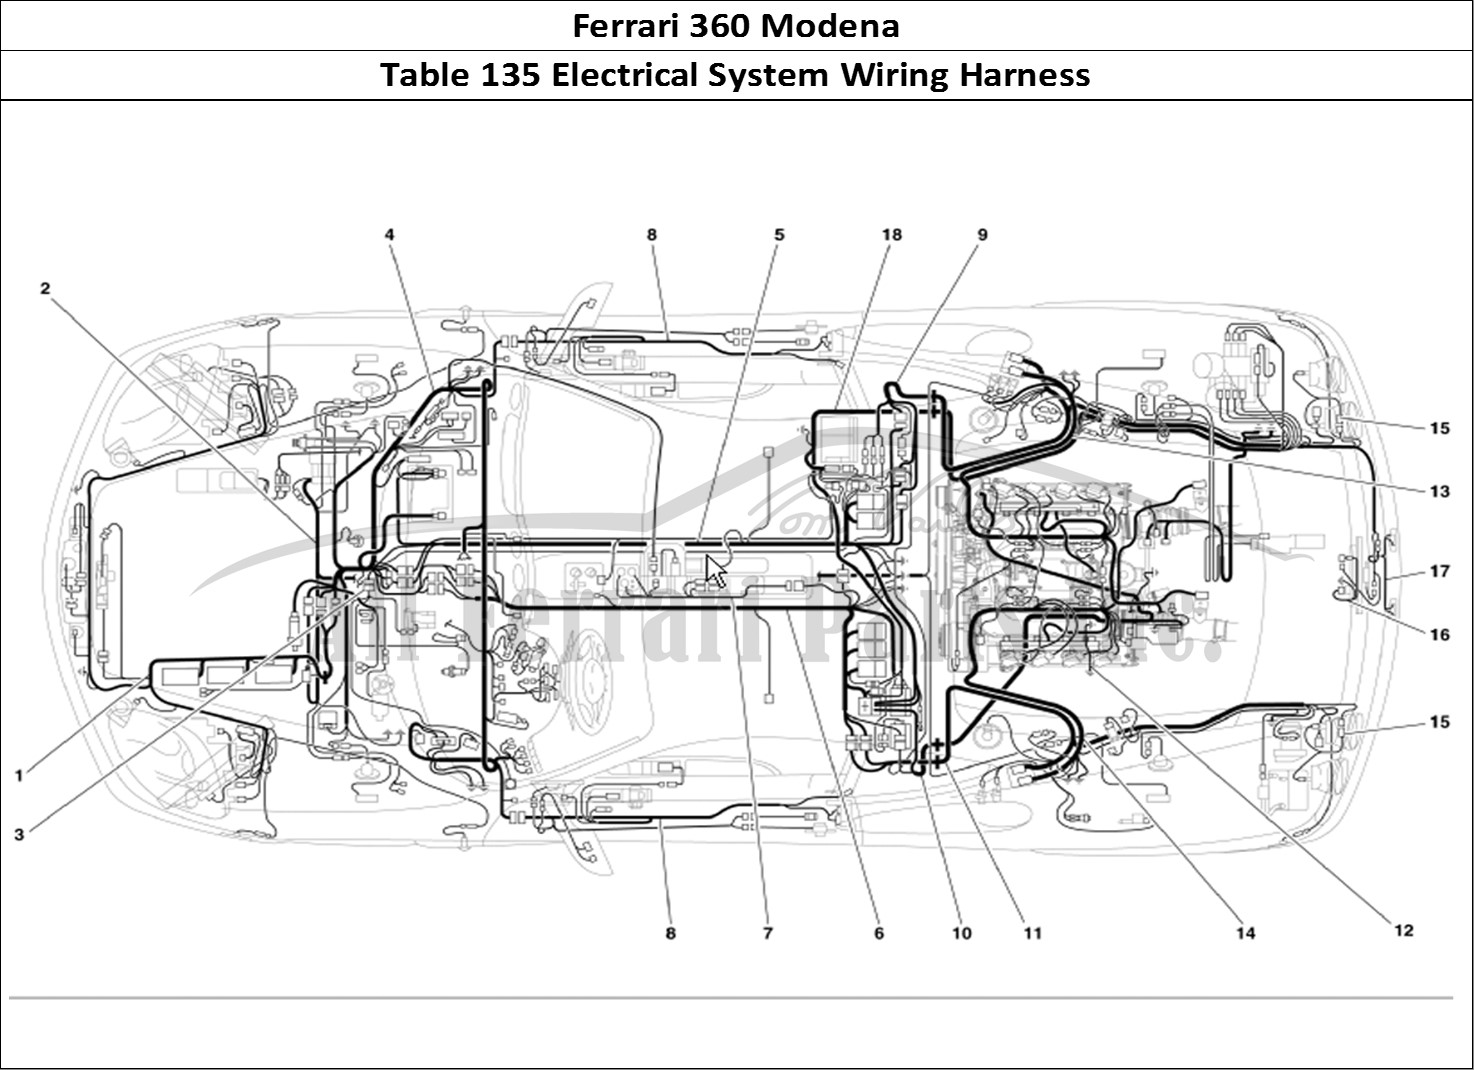 Ferrari Parts Ferrari 360 Modena Page 135 Electrical System